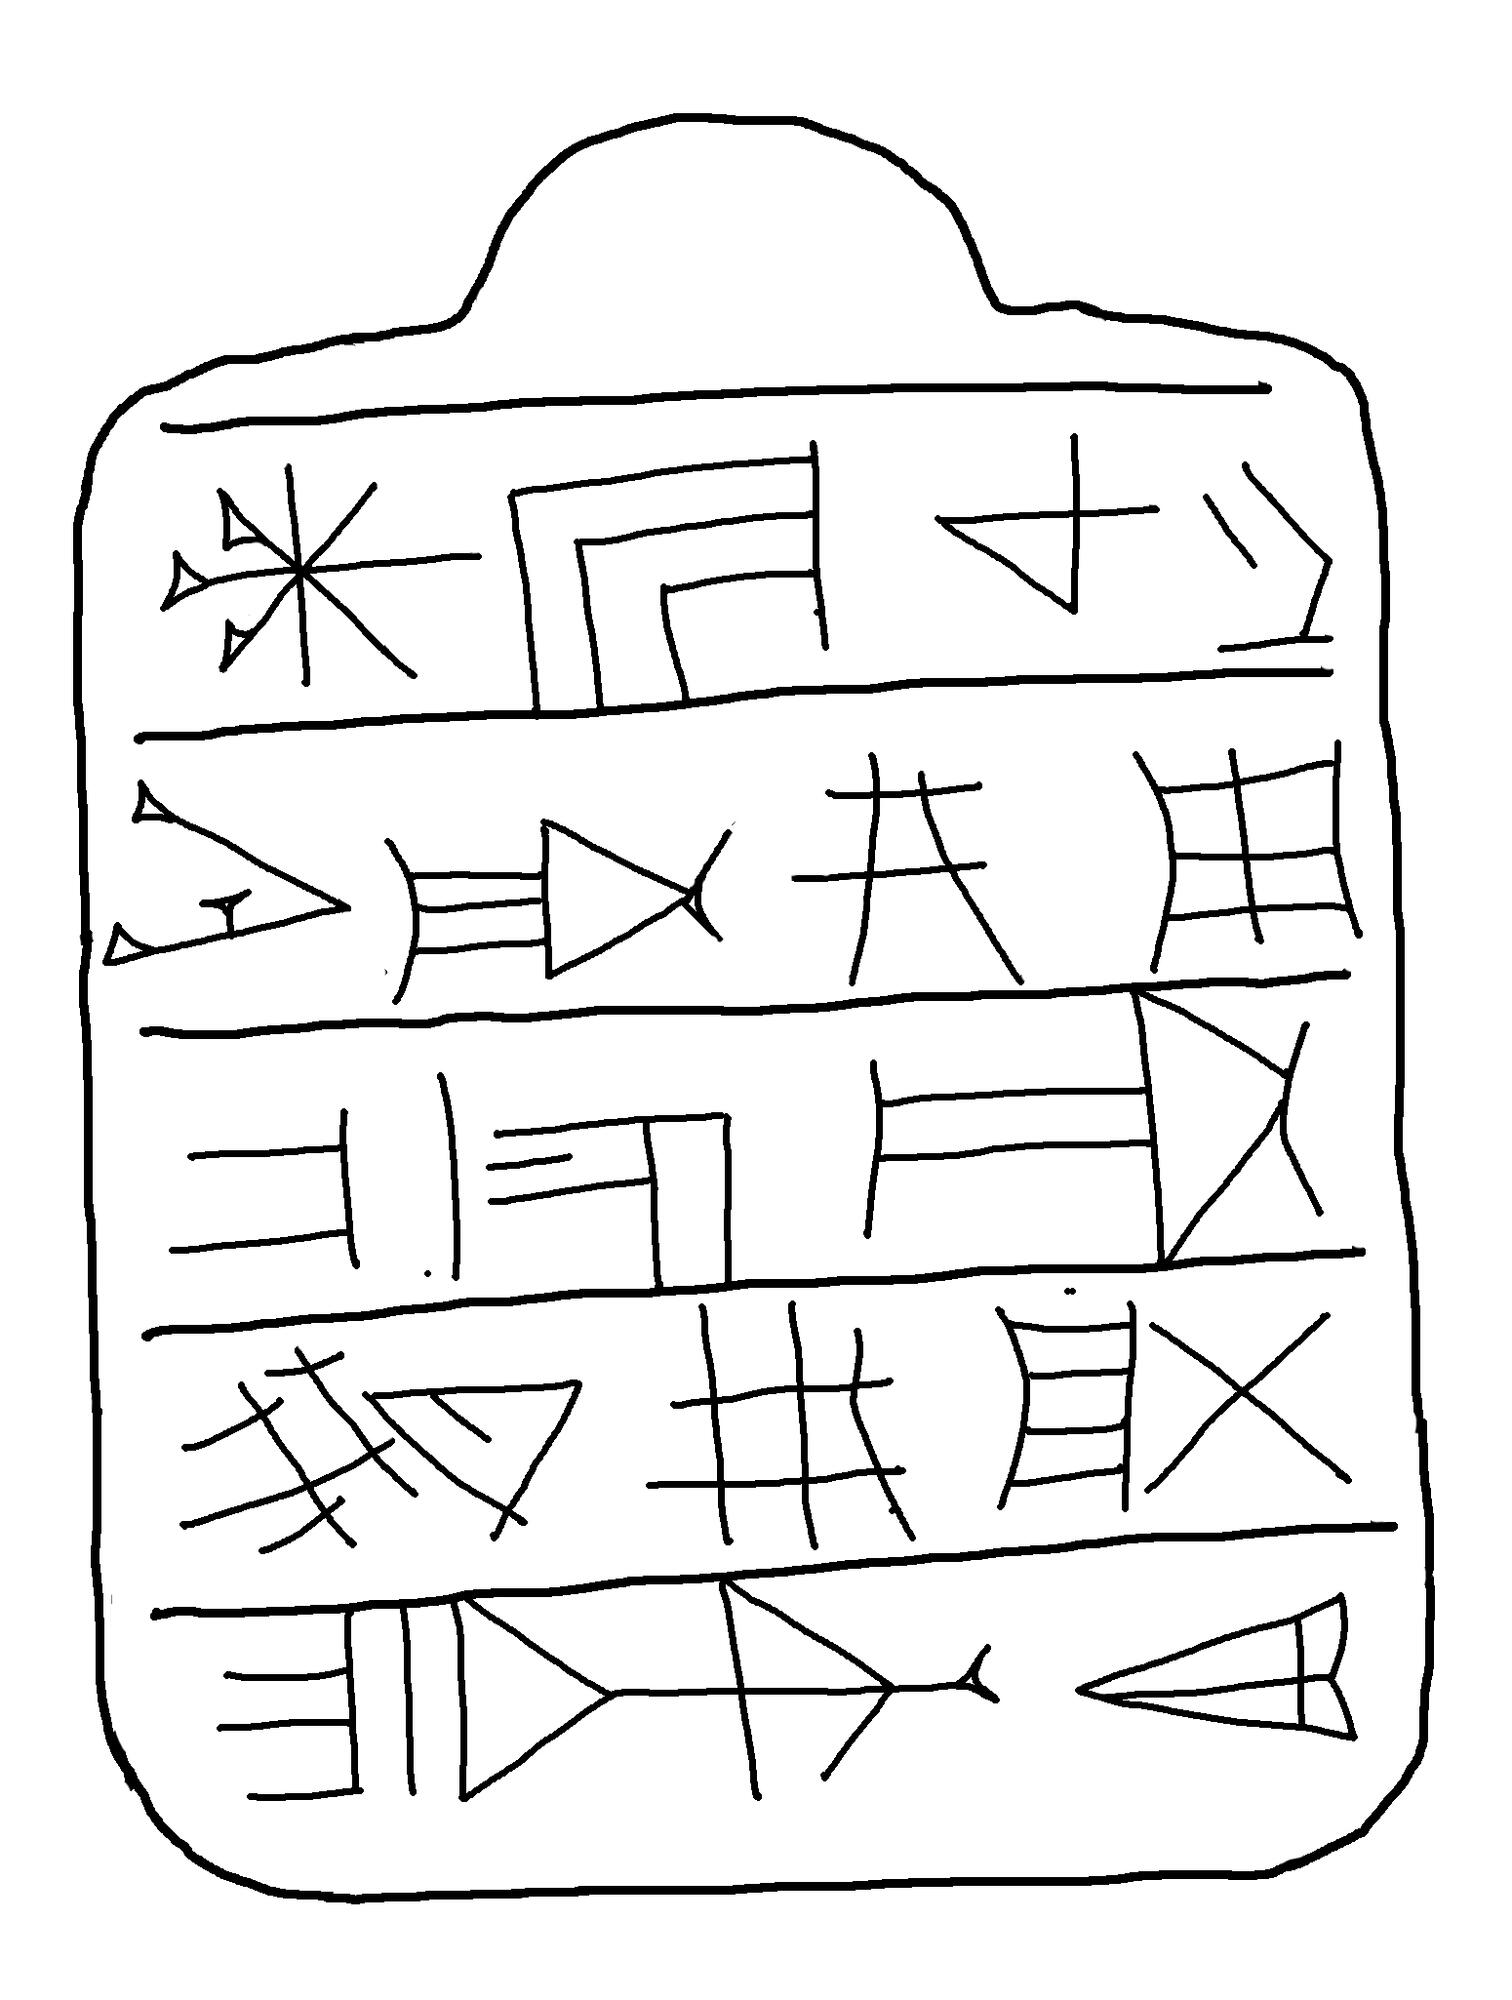 Hand drawing of reverse side of Lamashtu amulet